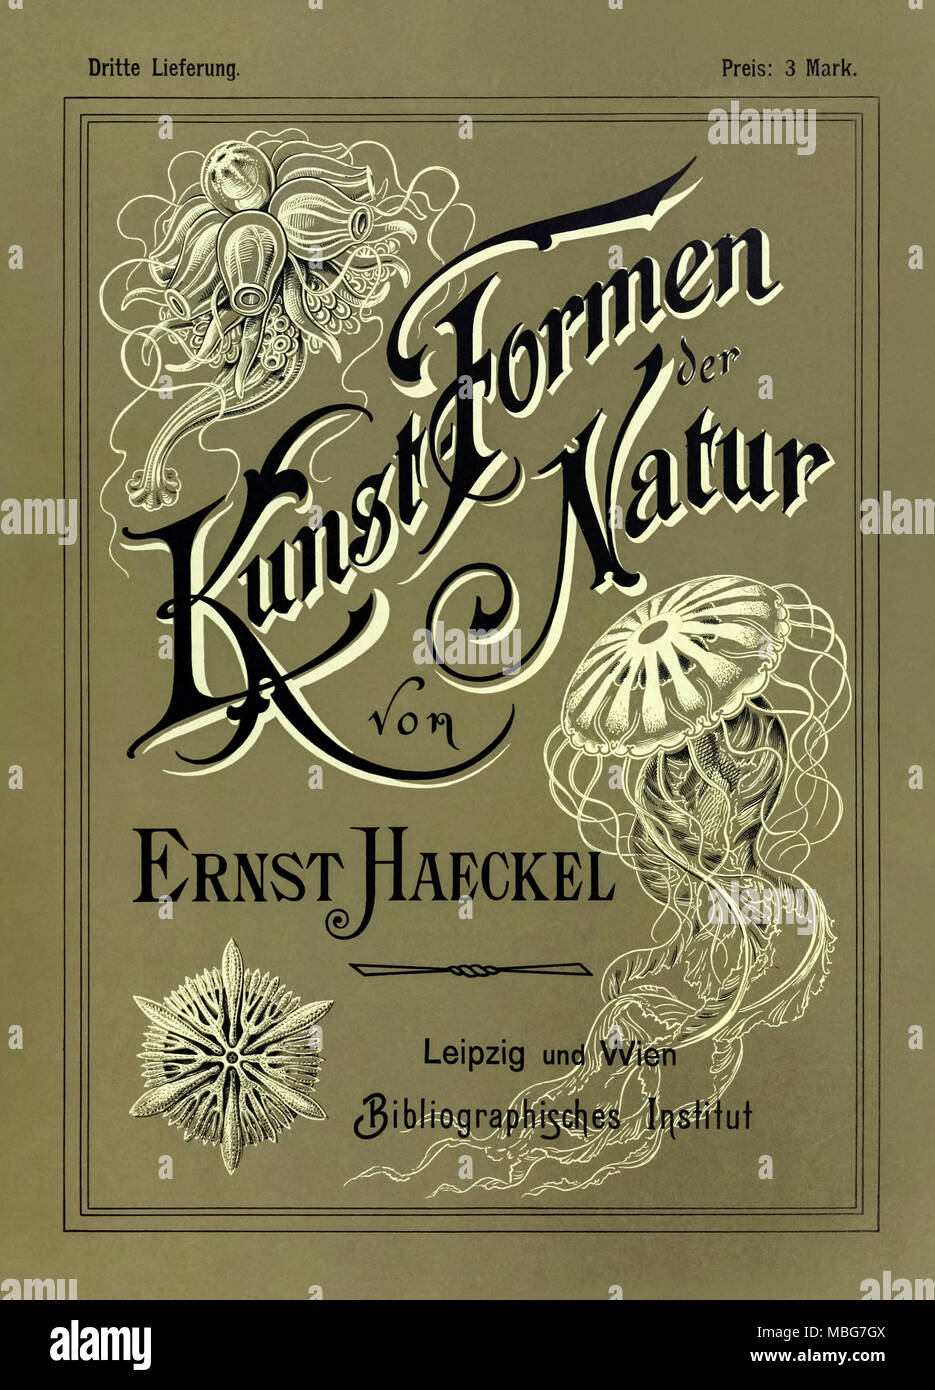 "Kunstformen der Natur" (formas de arte en la naturaleza) Portada de tercera edición ilustrada por Ernst Haeckel (1834-1919), litografía por Adolf Giltsch (1852-1911) y publicado por Bibliographisches Institut entre 1899 y 1904. Ver más información a continuación. Foto de stock